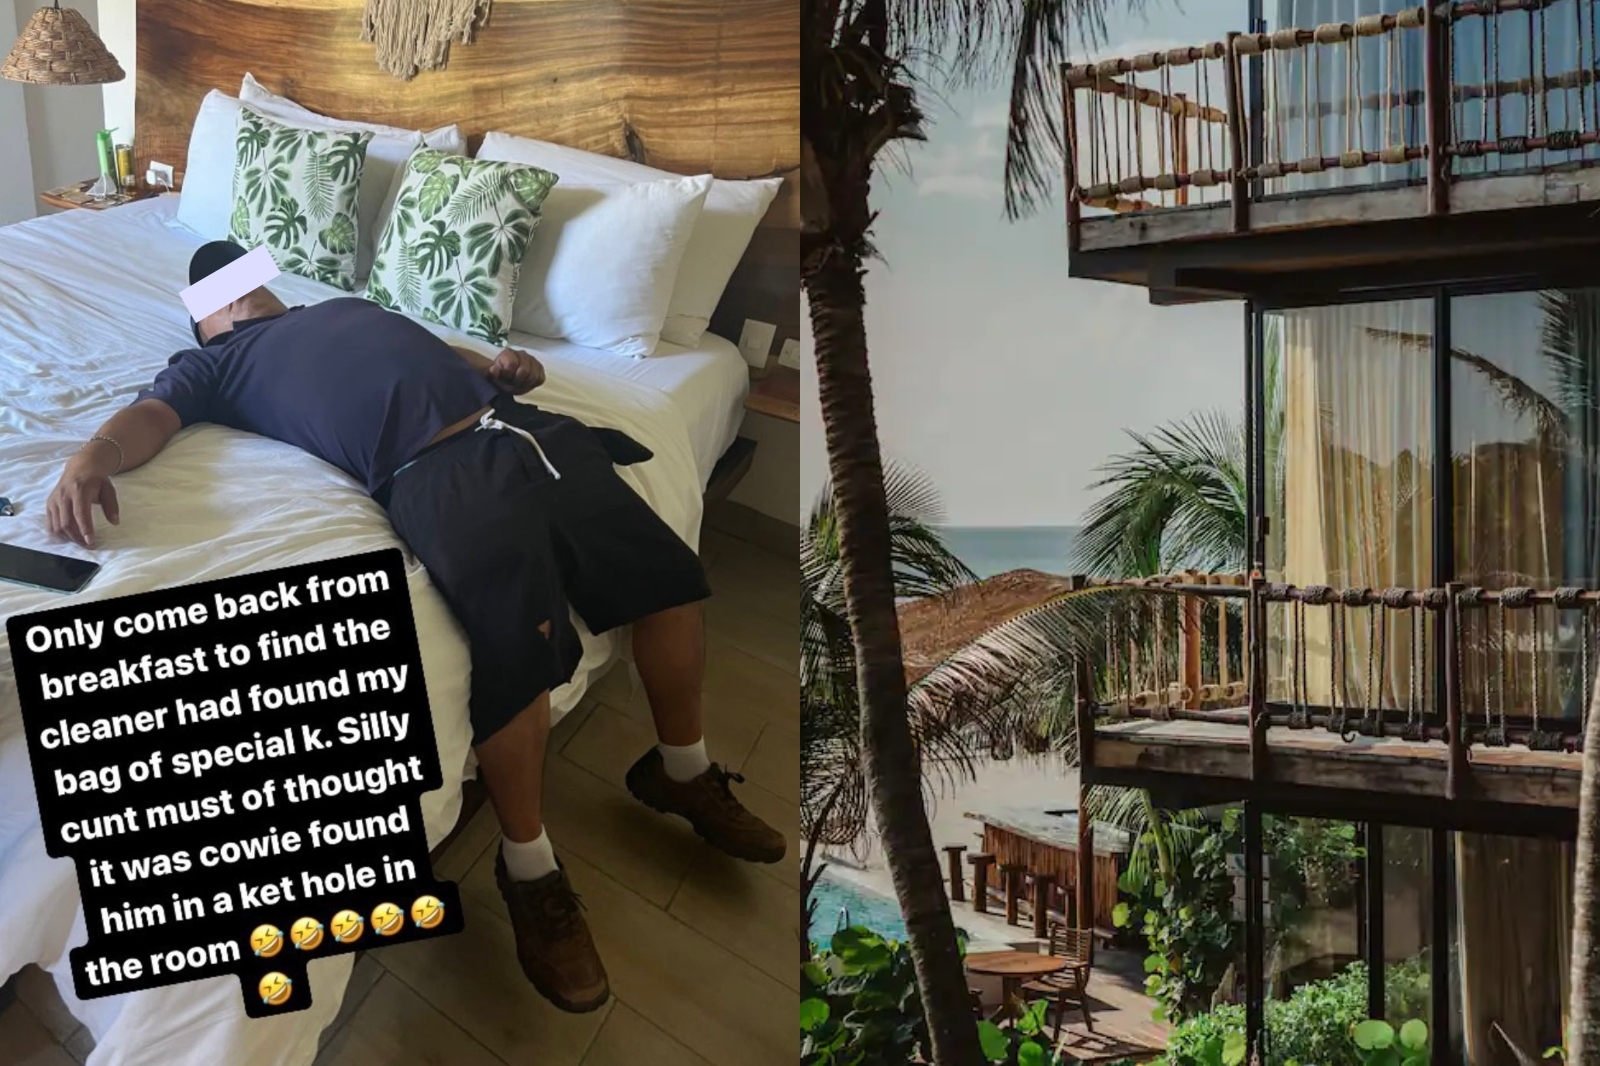 Turista inglés ingresa droga a un hotel de Tulum; empleado la consume: FOTO